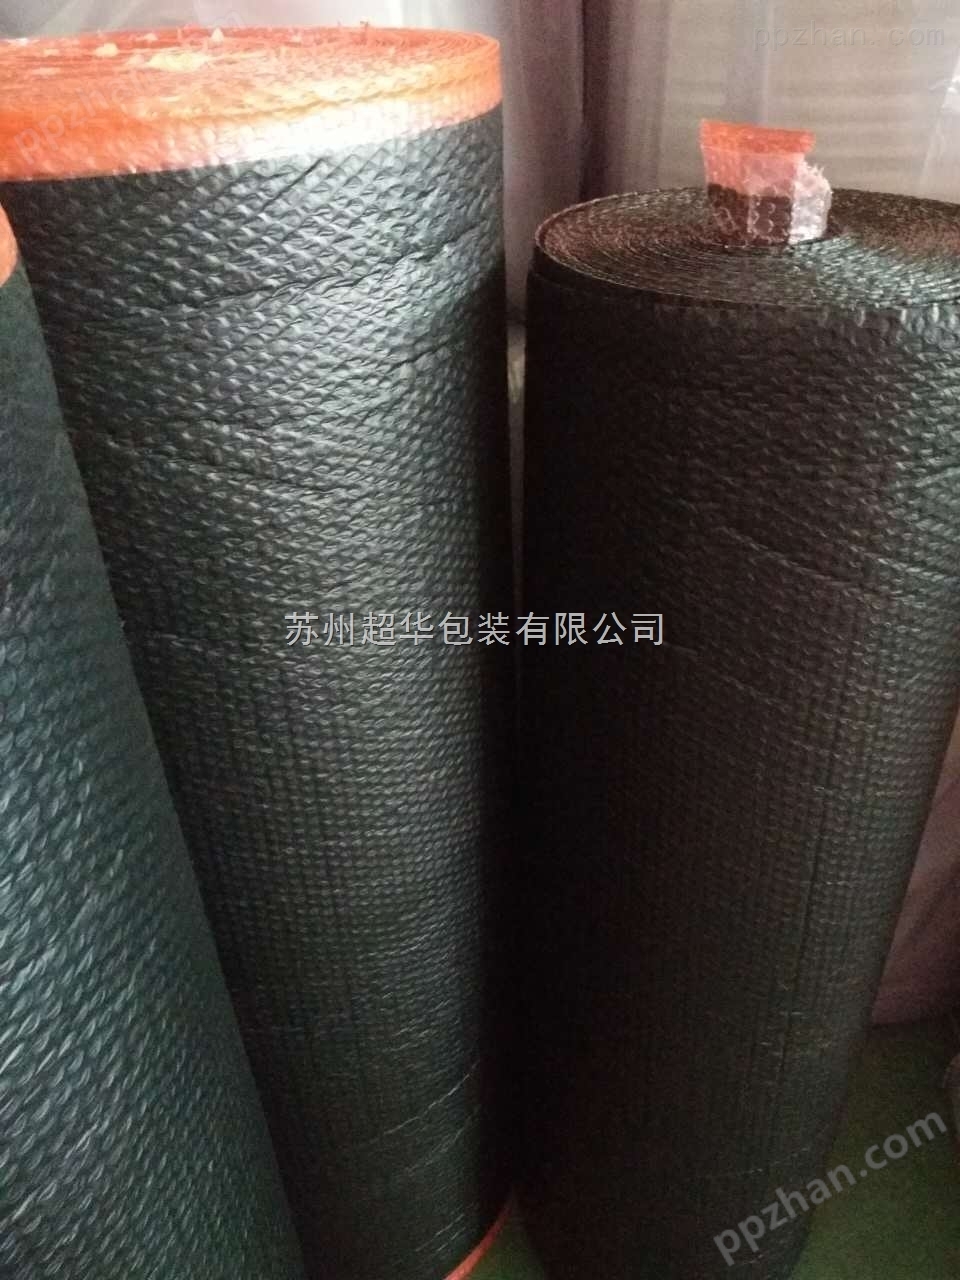 黑色导电气泡膜 电子产品包装用气泡膜 苏州厂家供应